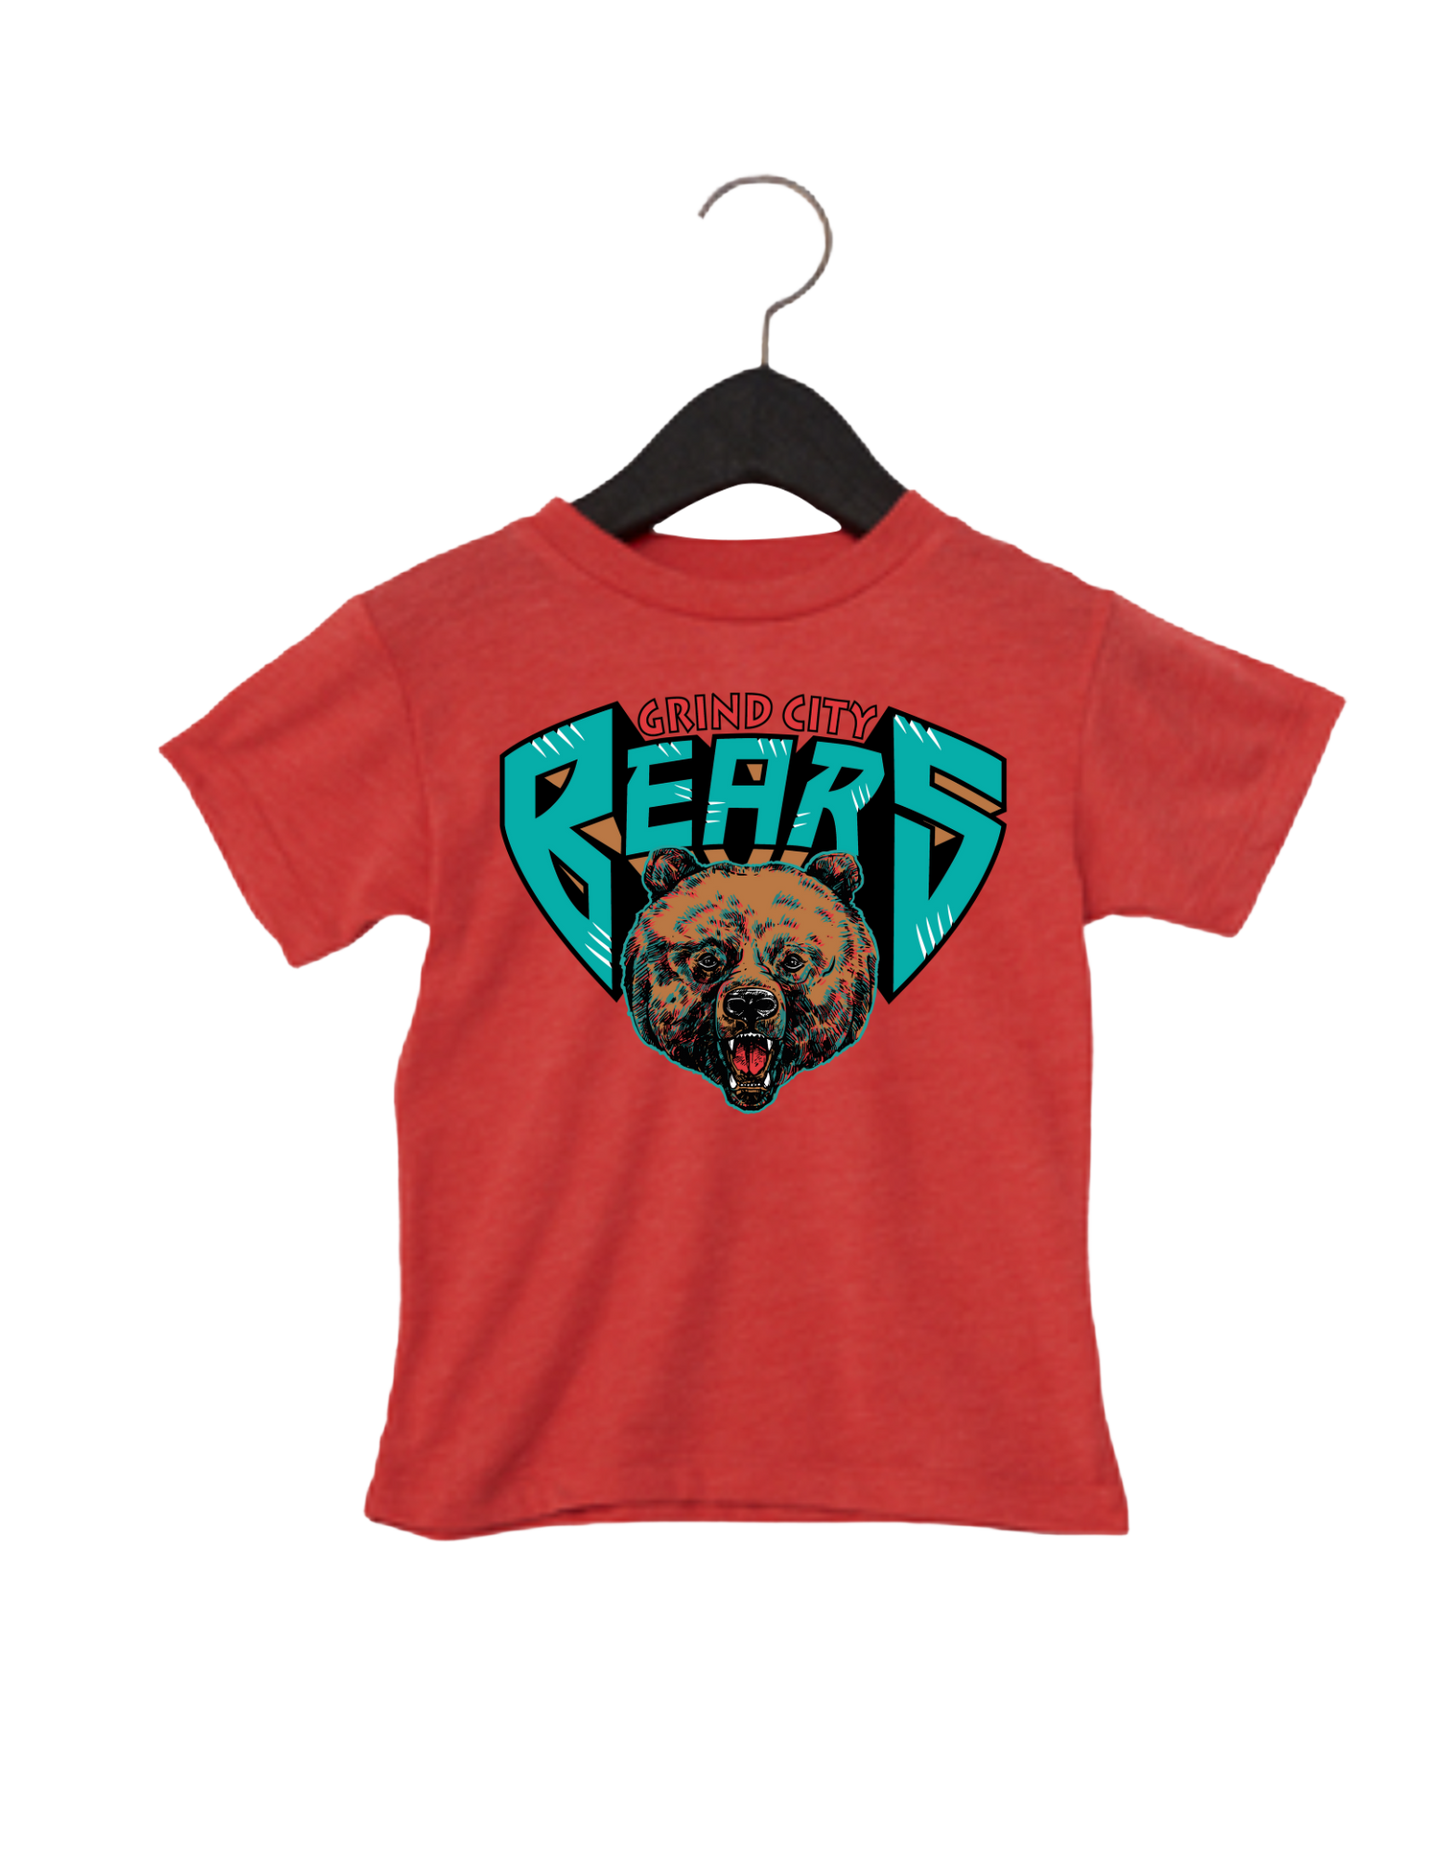 Grind City Bears Tee - Red (Kids)